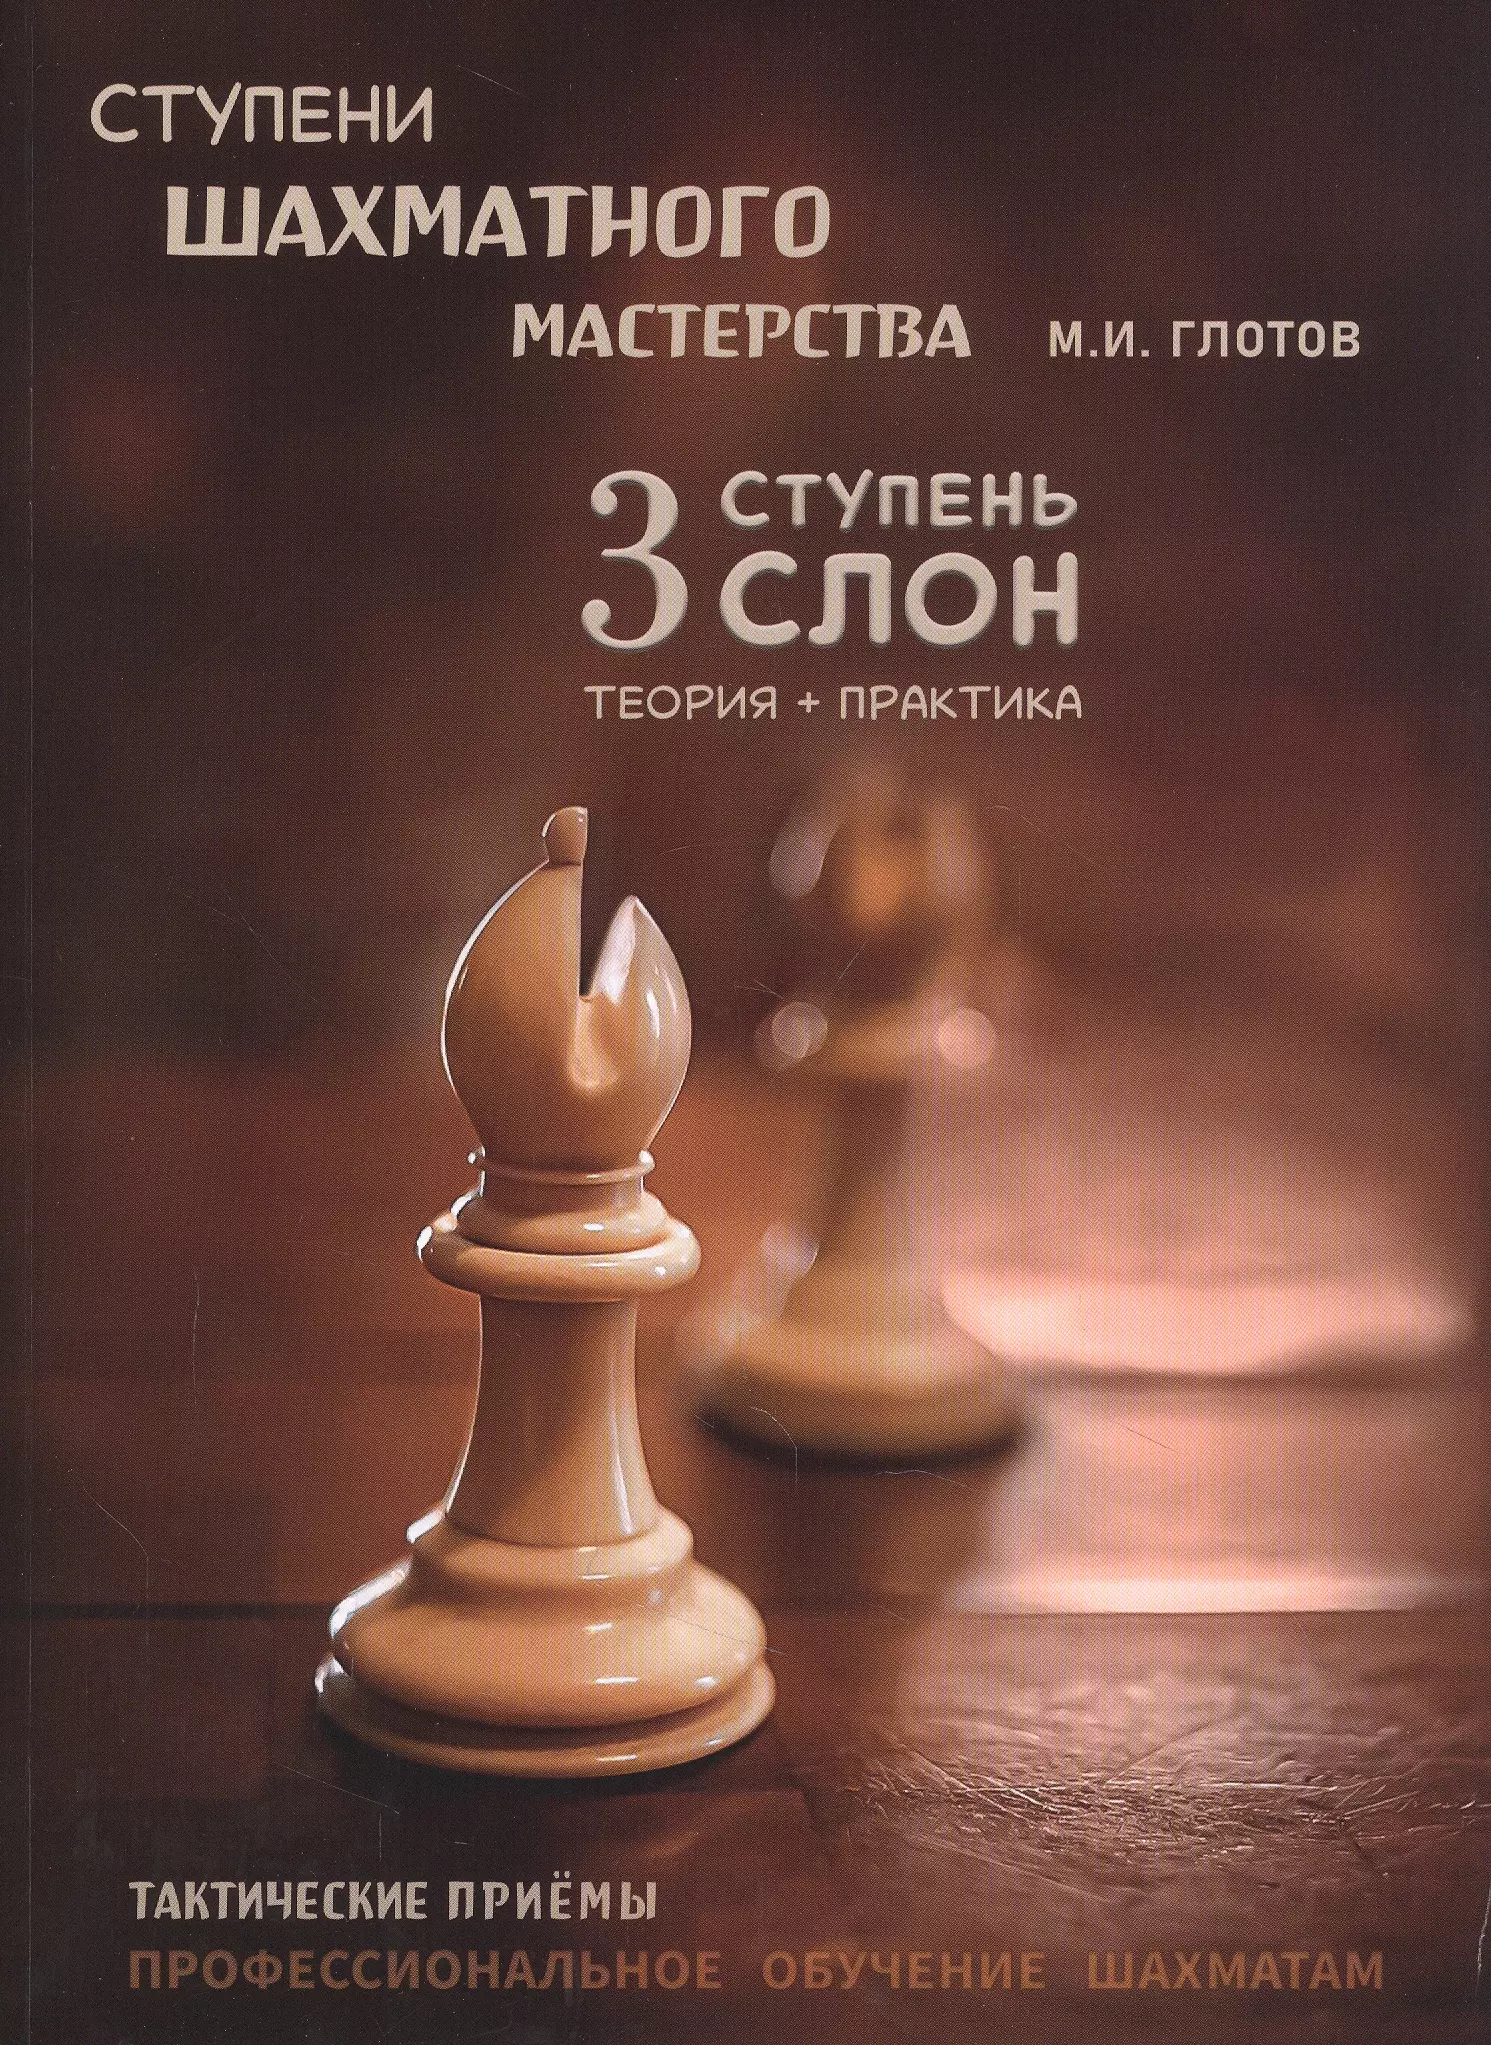 глотов михаил игоревич ступени шахматного мастерства 3 ступень слон Ступени шахматного мастерства. 3 ступень Слон